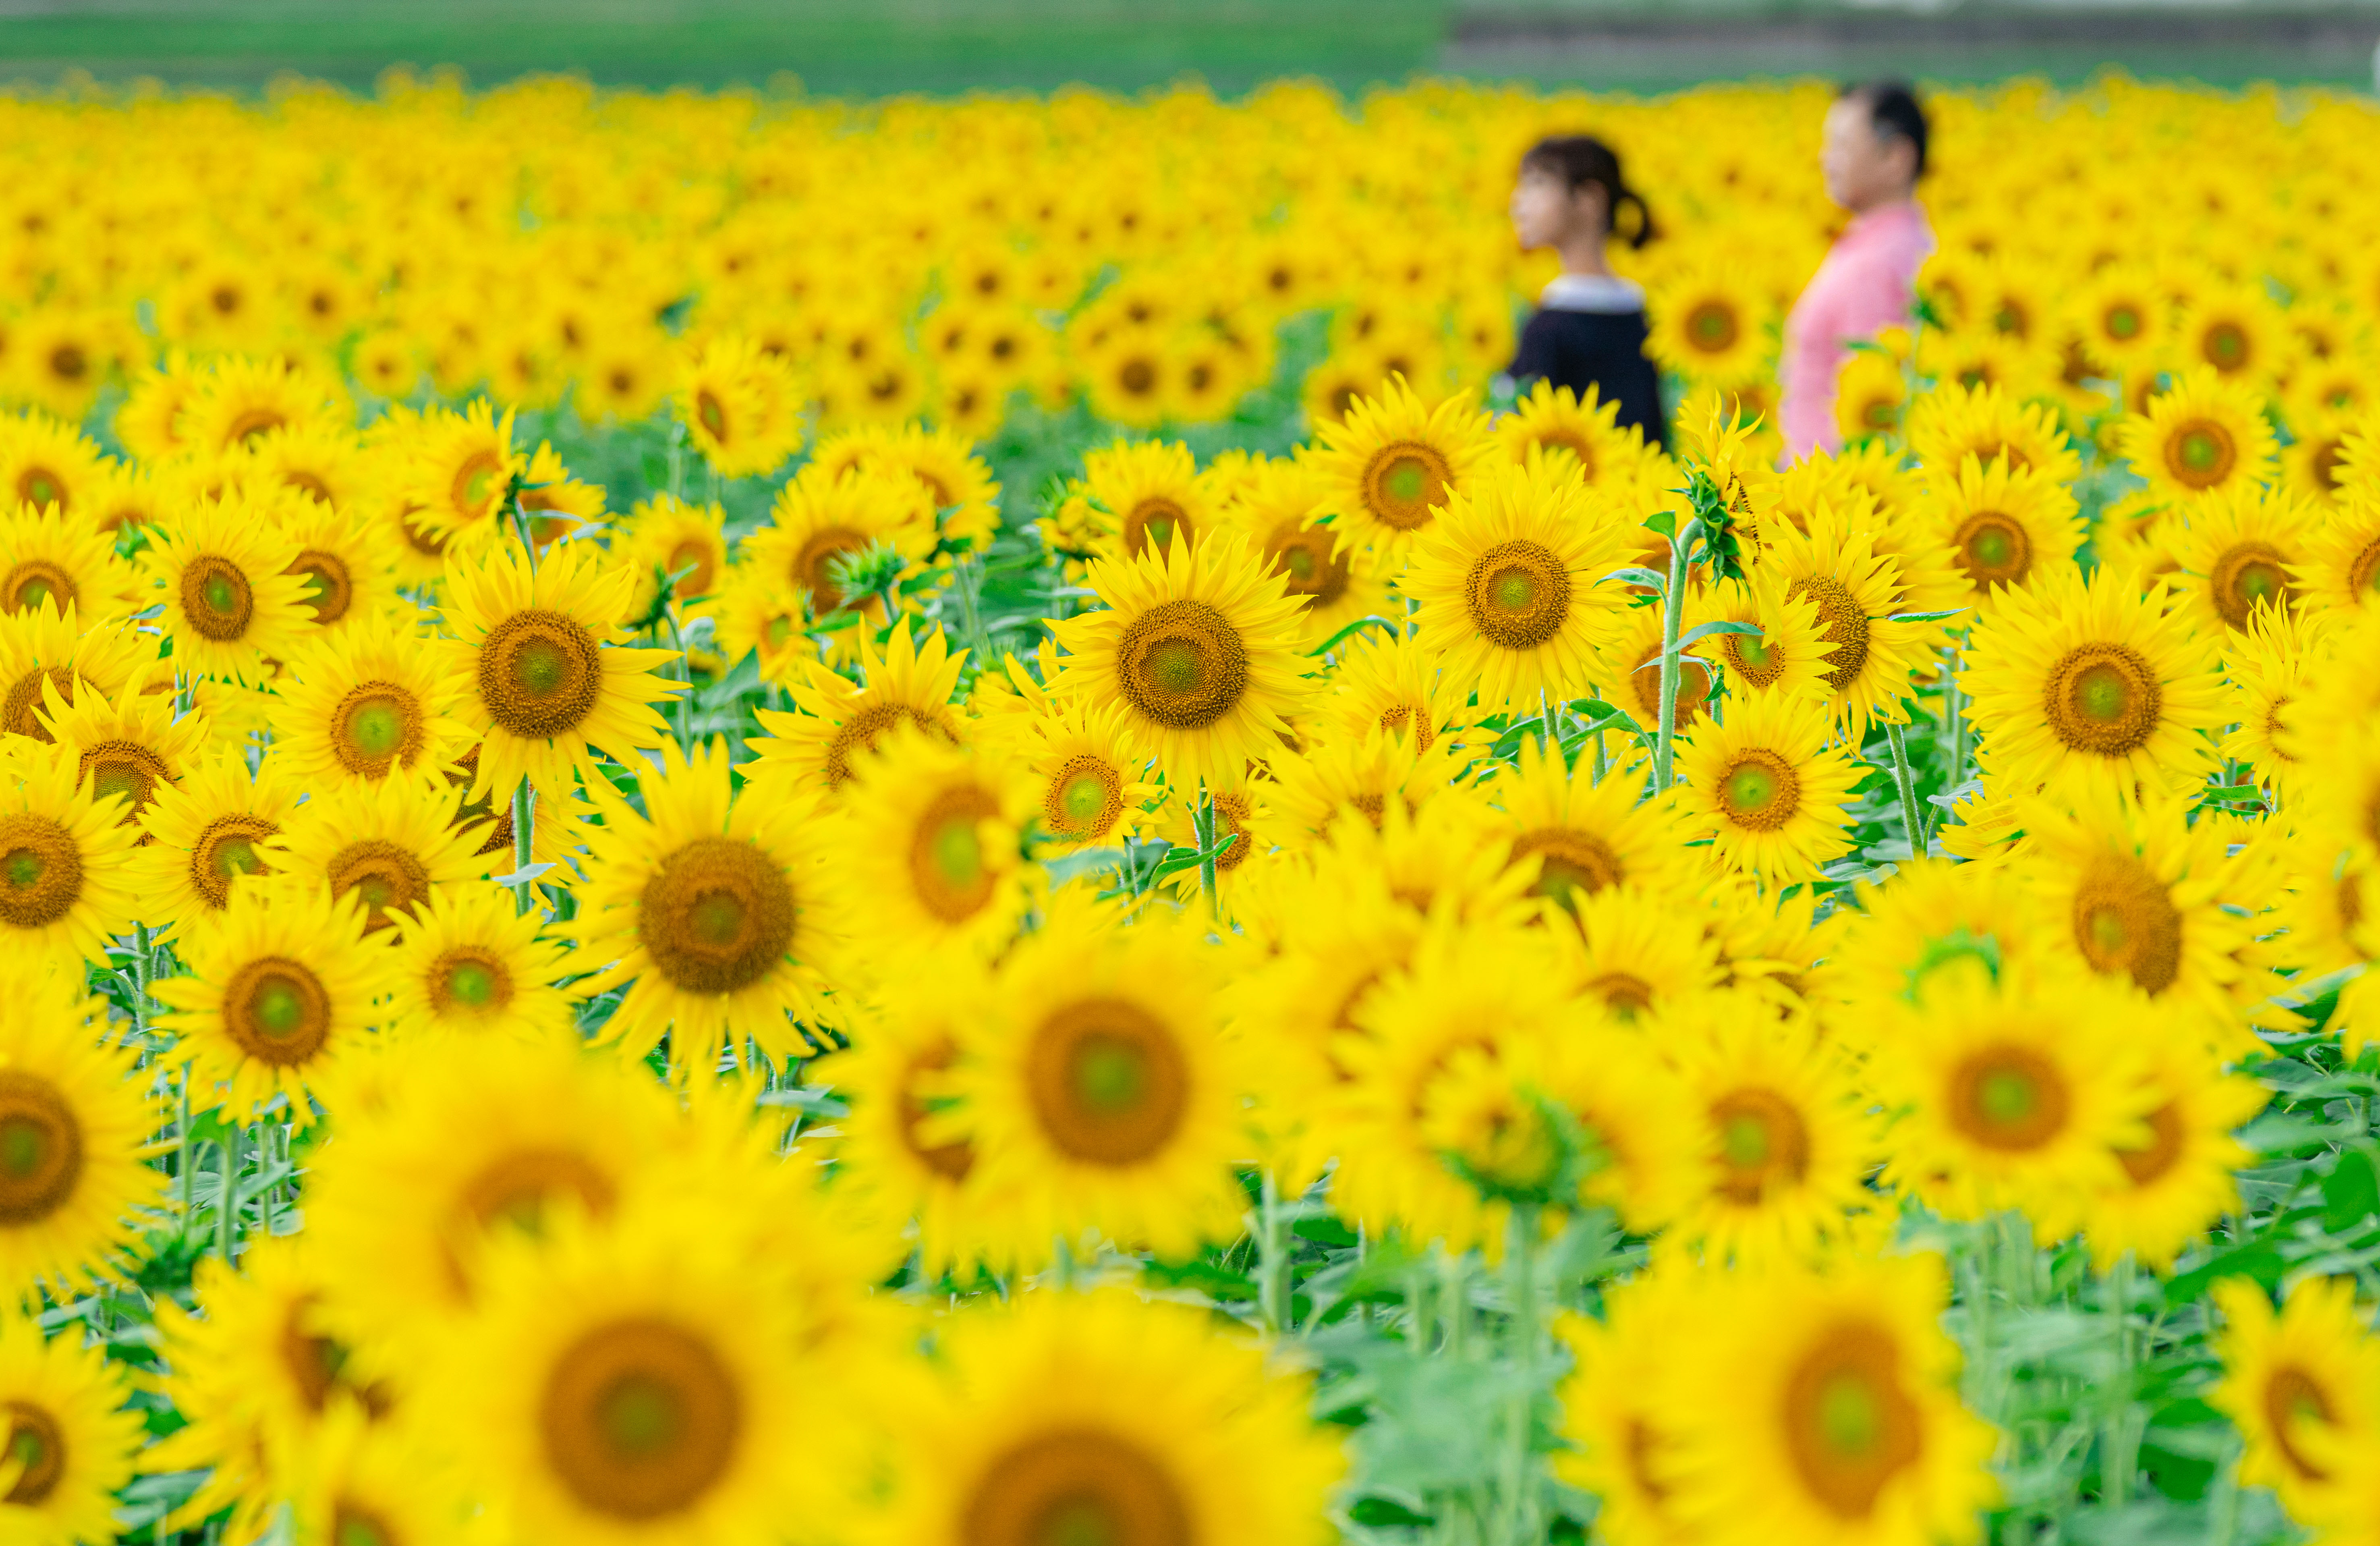 上笠田のひまわり畑の写真 ひまわりに囲まれて 三重県の無料写真は三重フォトギャラリー